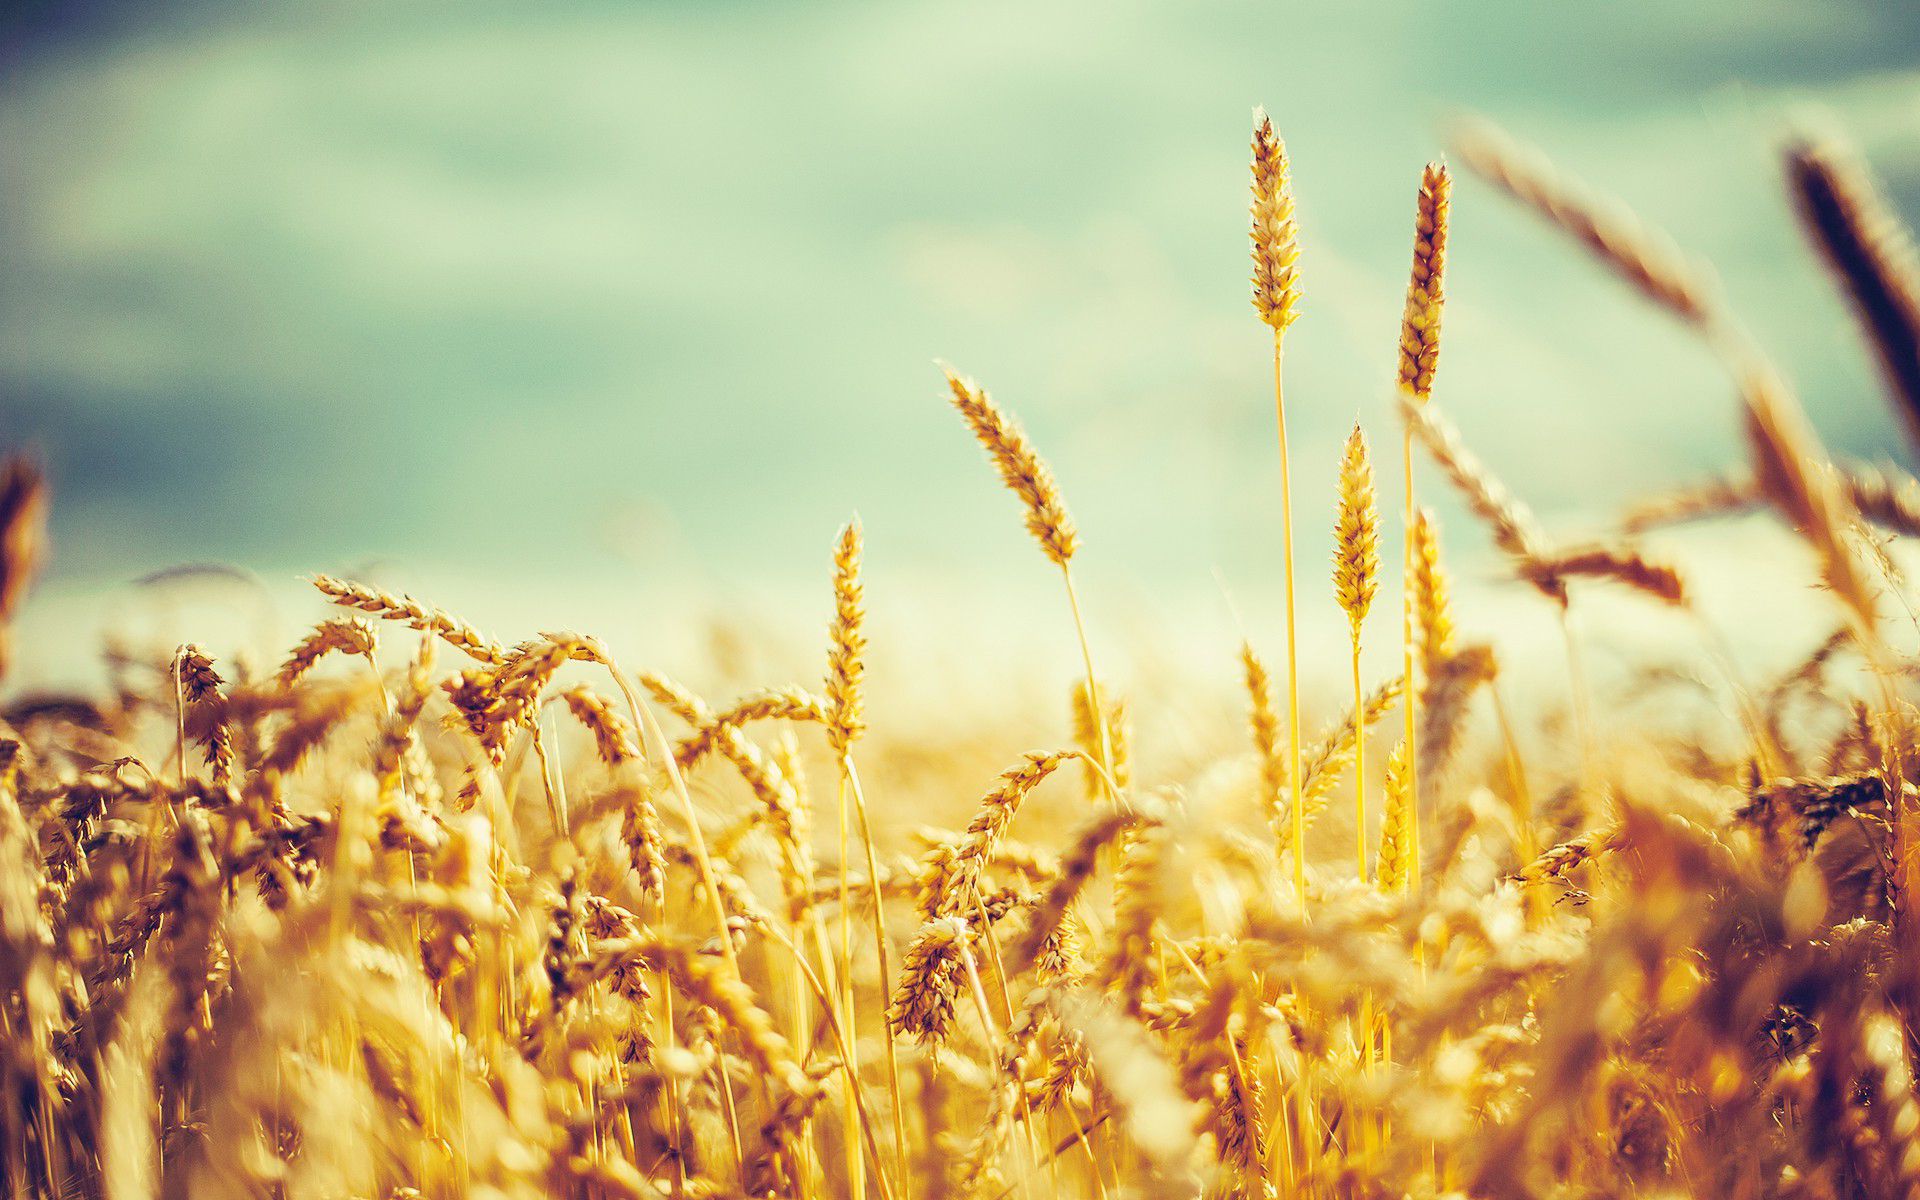 Free photo: Corn field, Crops, Field